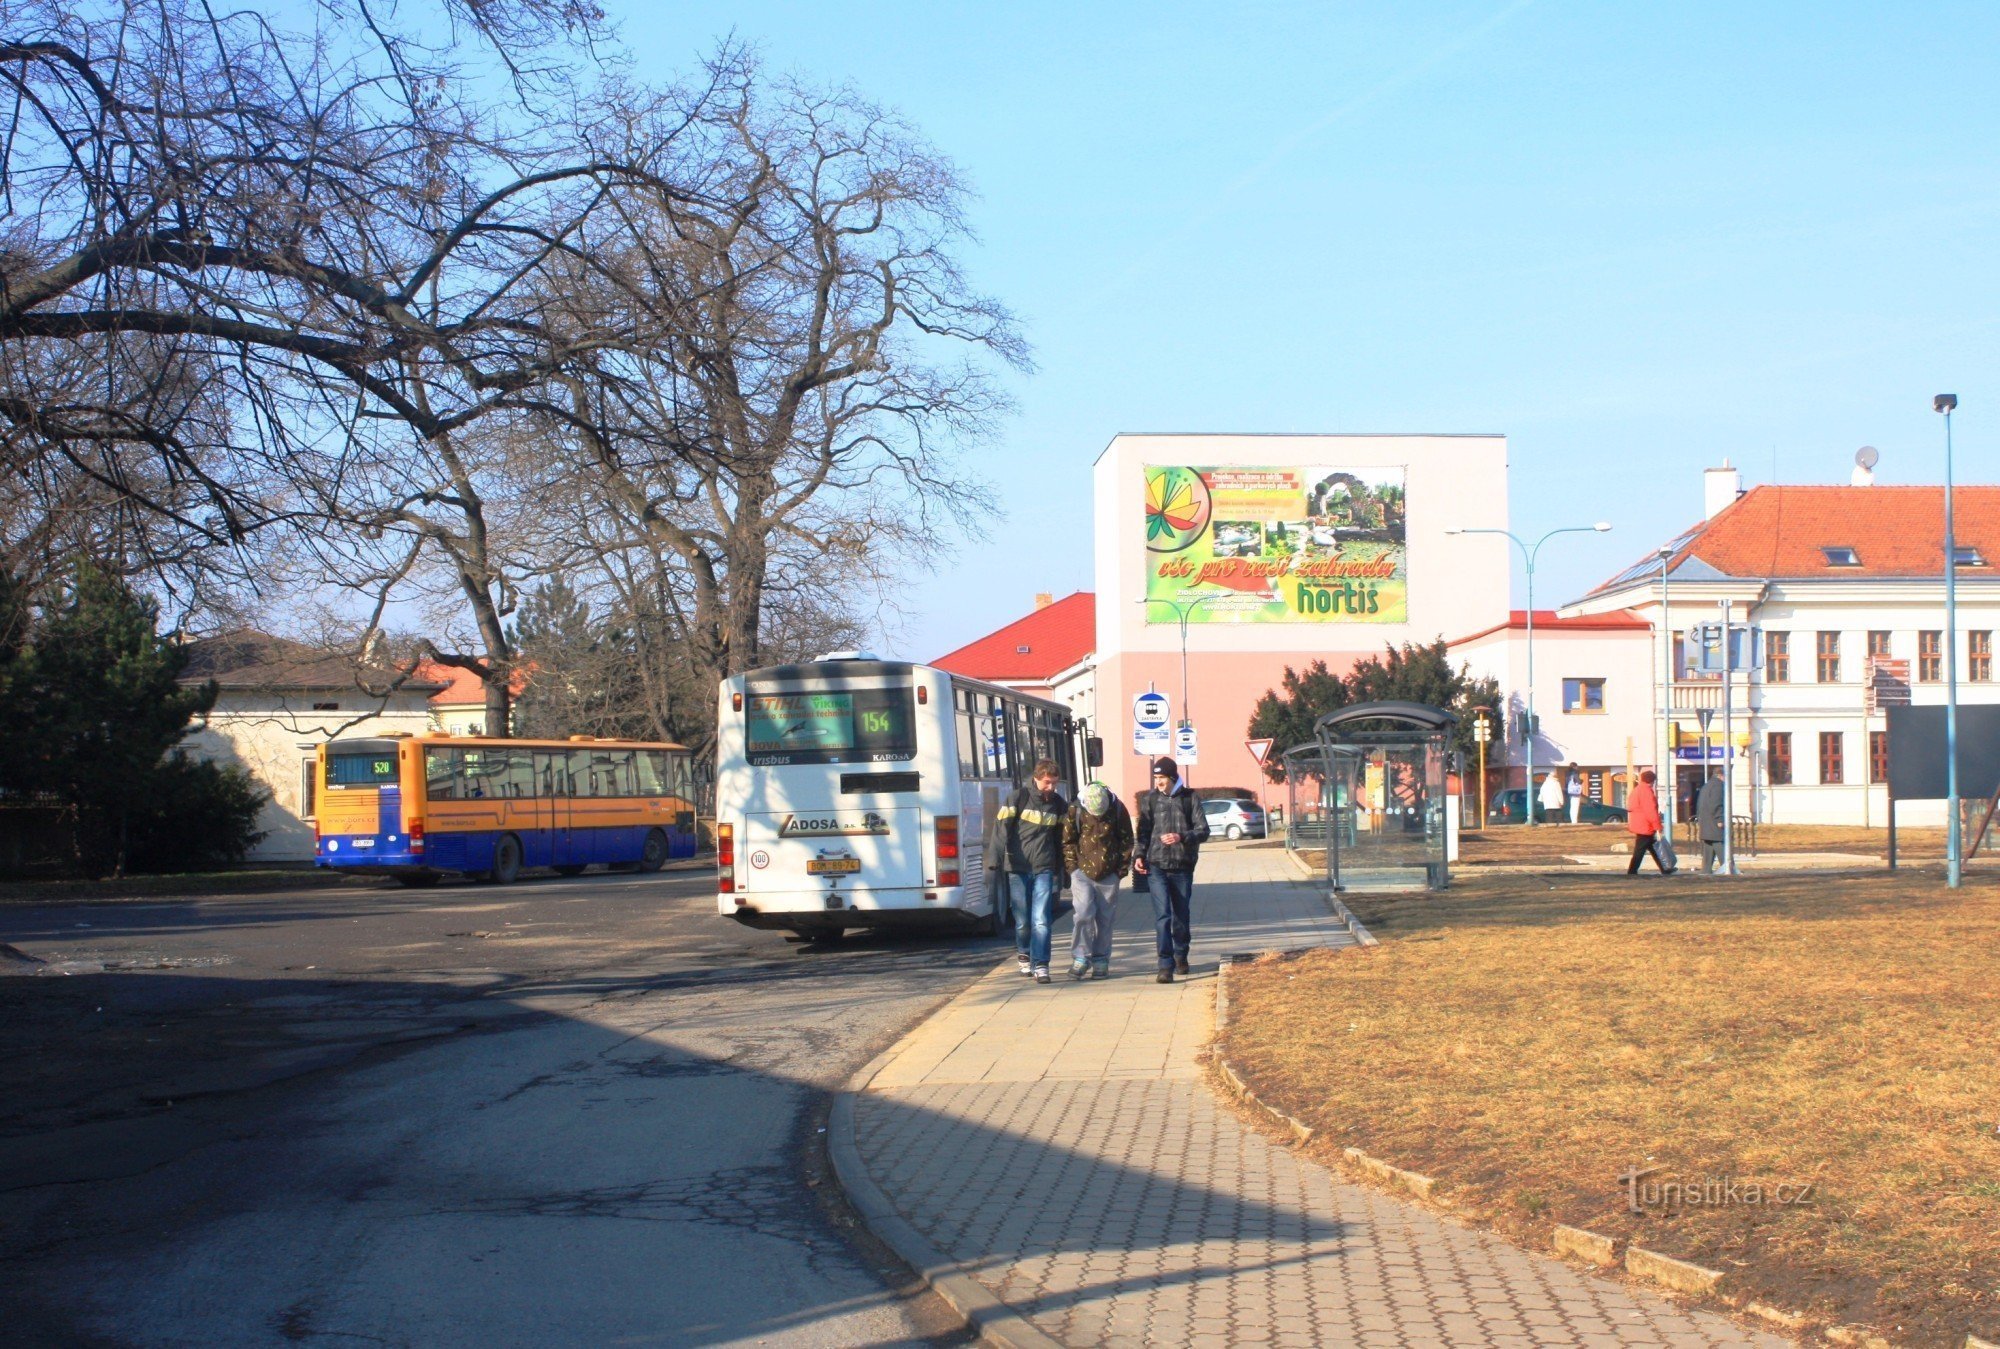 La estación de autobuses se encuentra en el borde del parque del castillo.